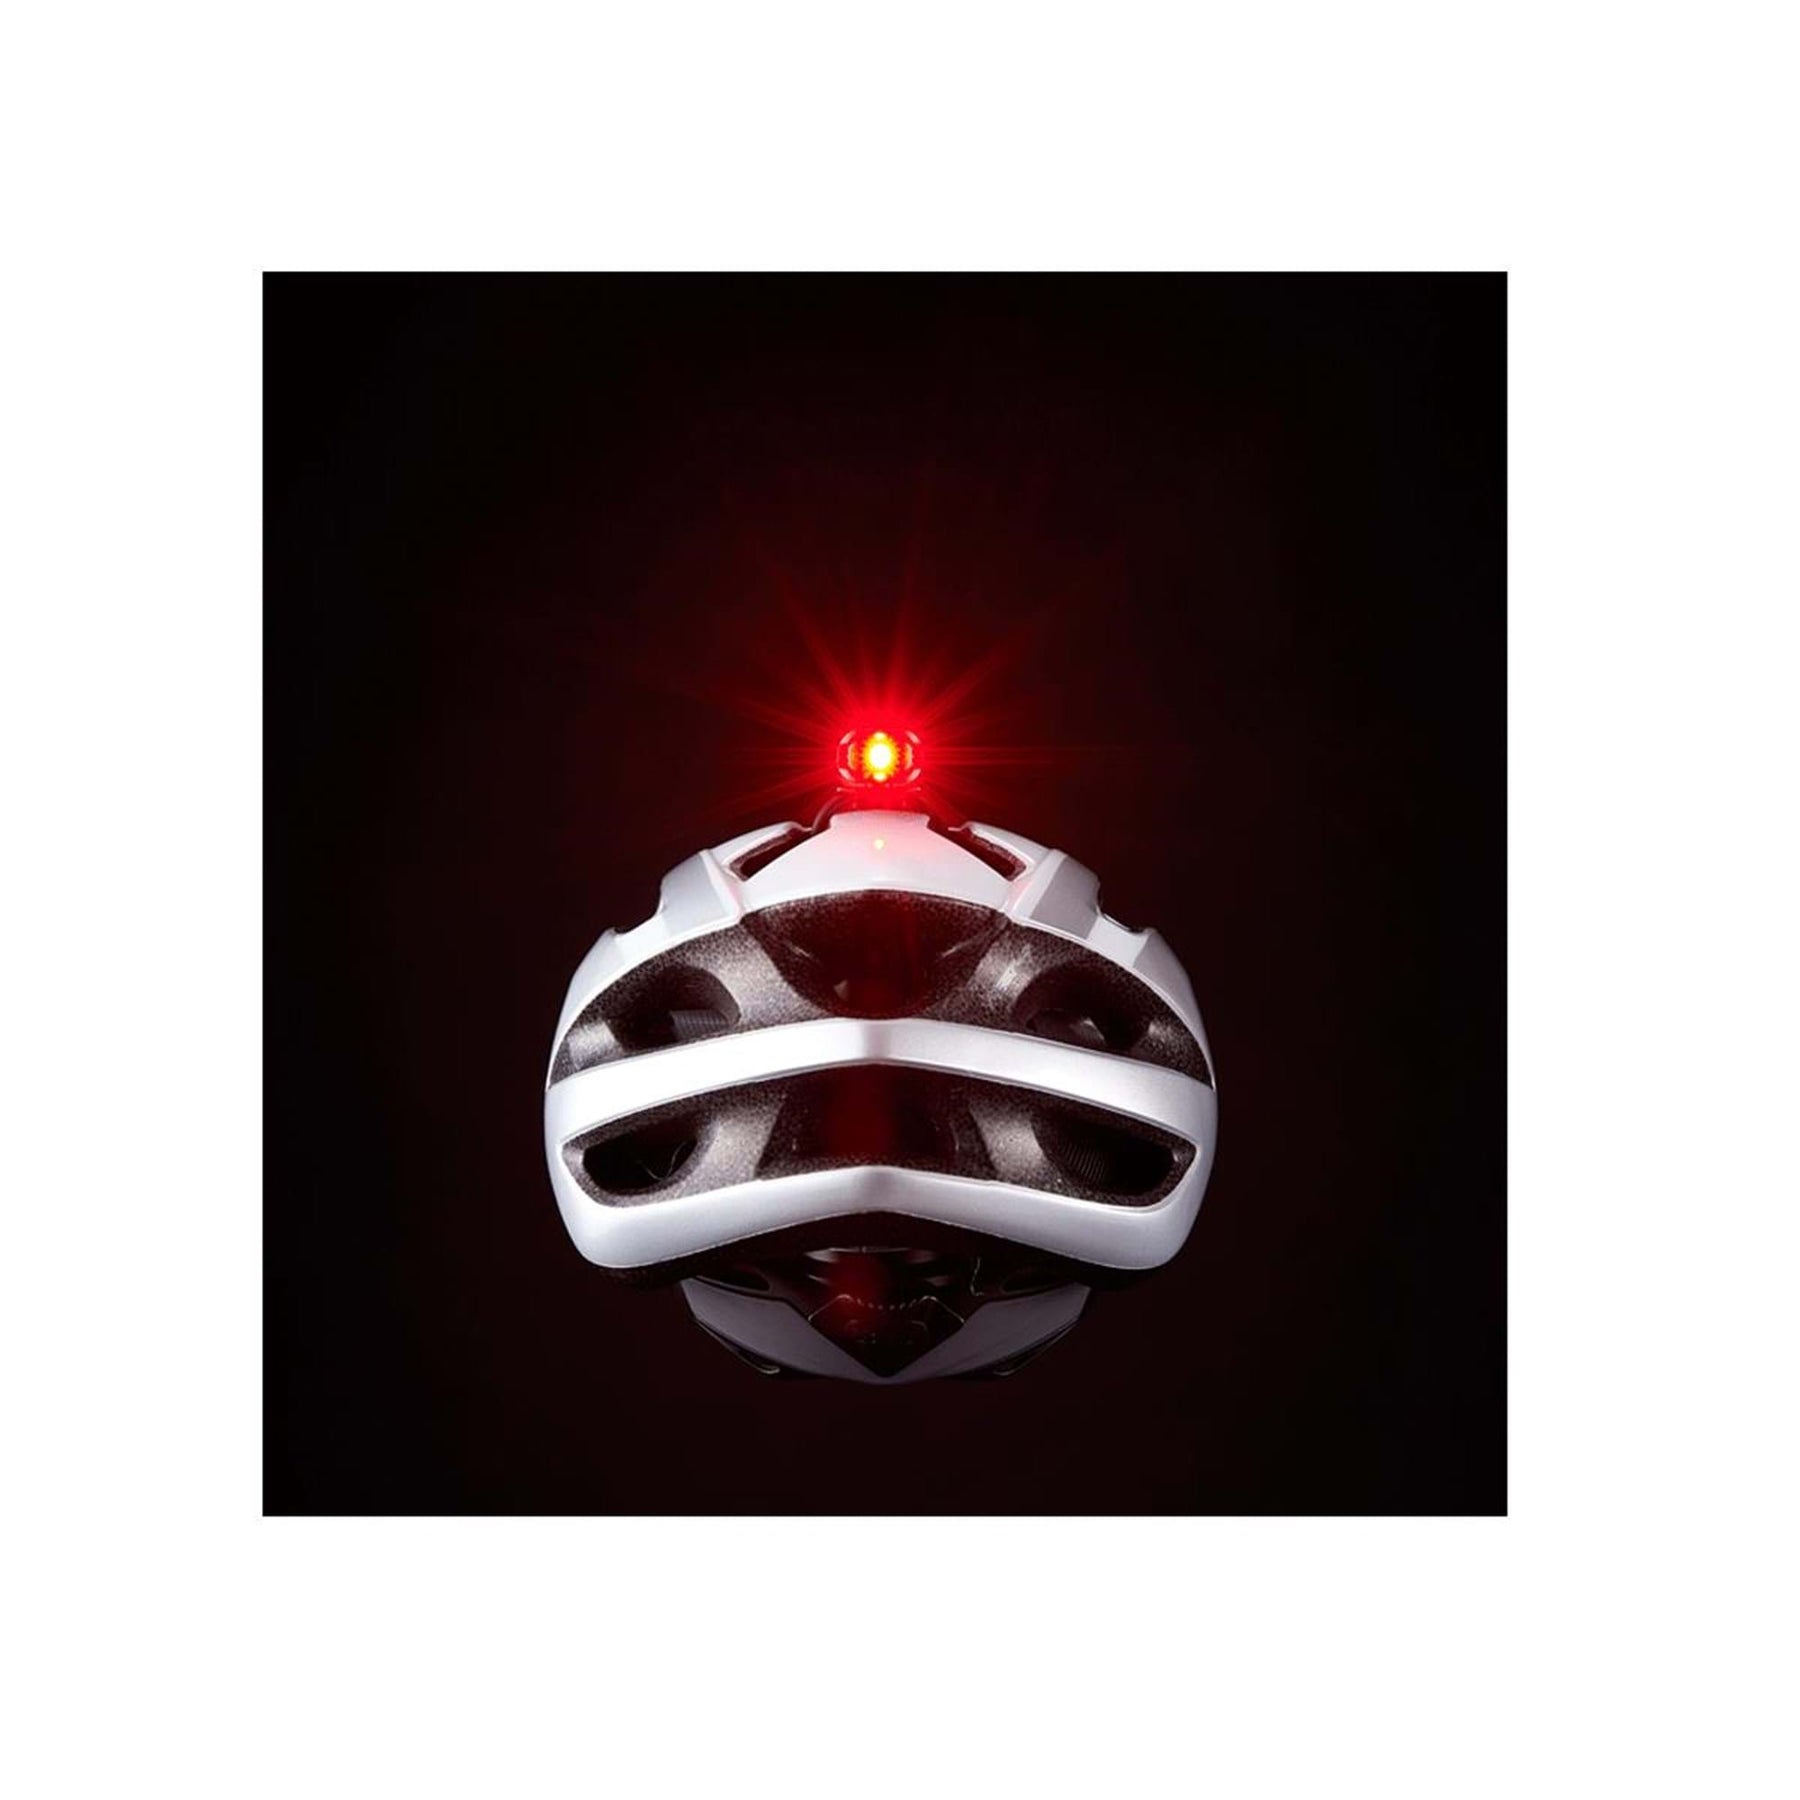 Cateye Duplex Front/Rear Helmet Battery Light